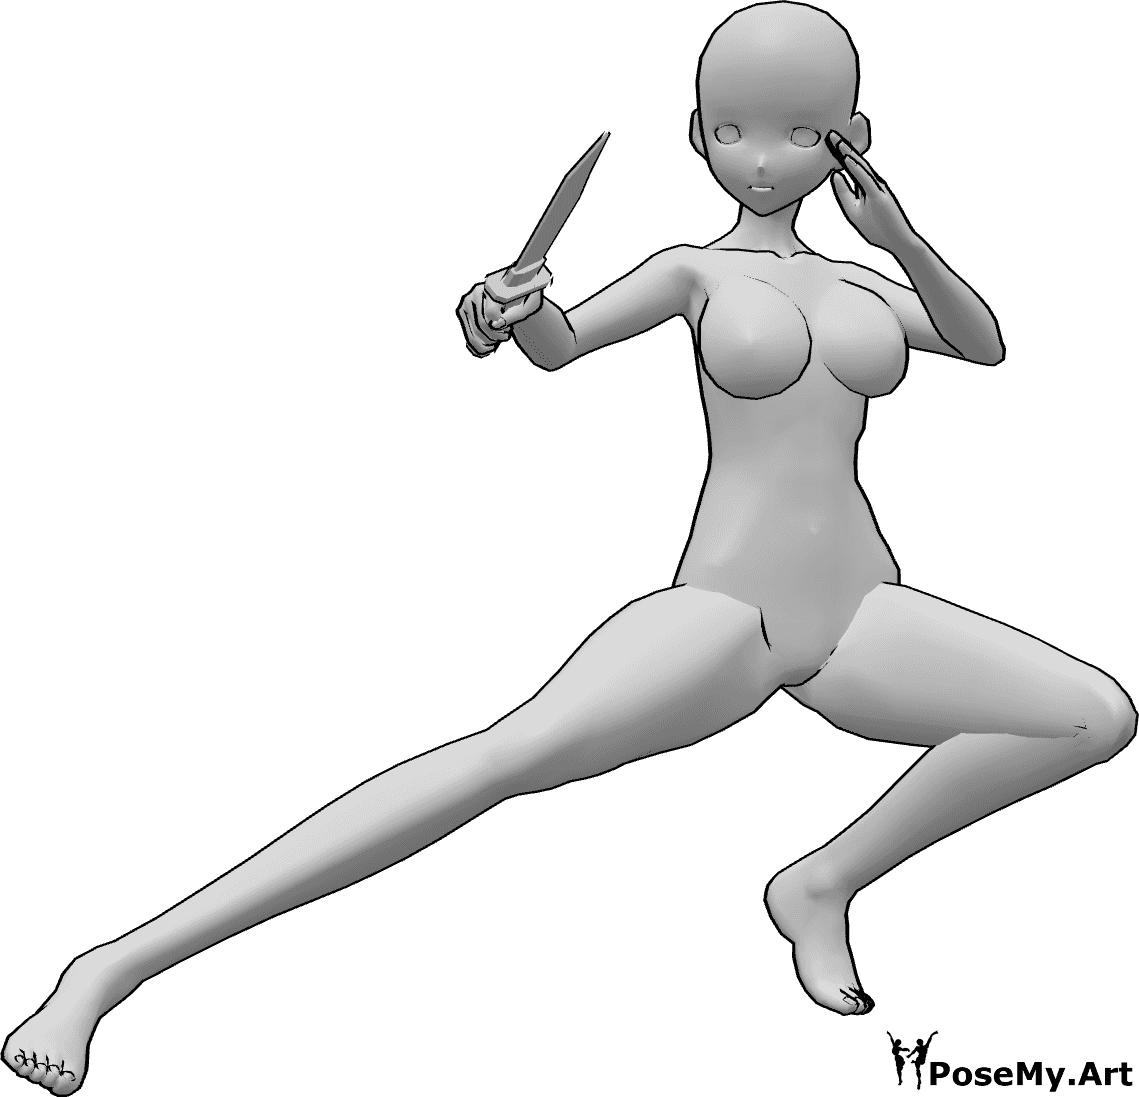 Riferimento alle pose- Posa del coltello accovacciato in stile anime - Una donna antropomorfa è accovacciata e tiene un coltello nella mano destra.